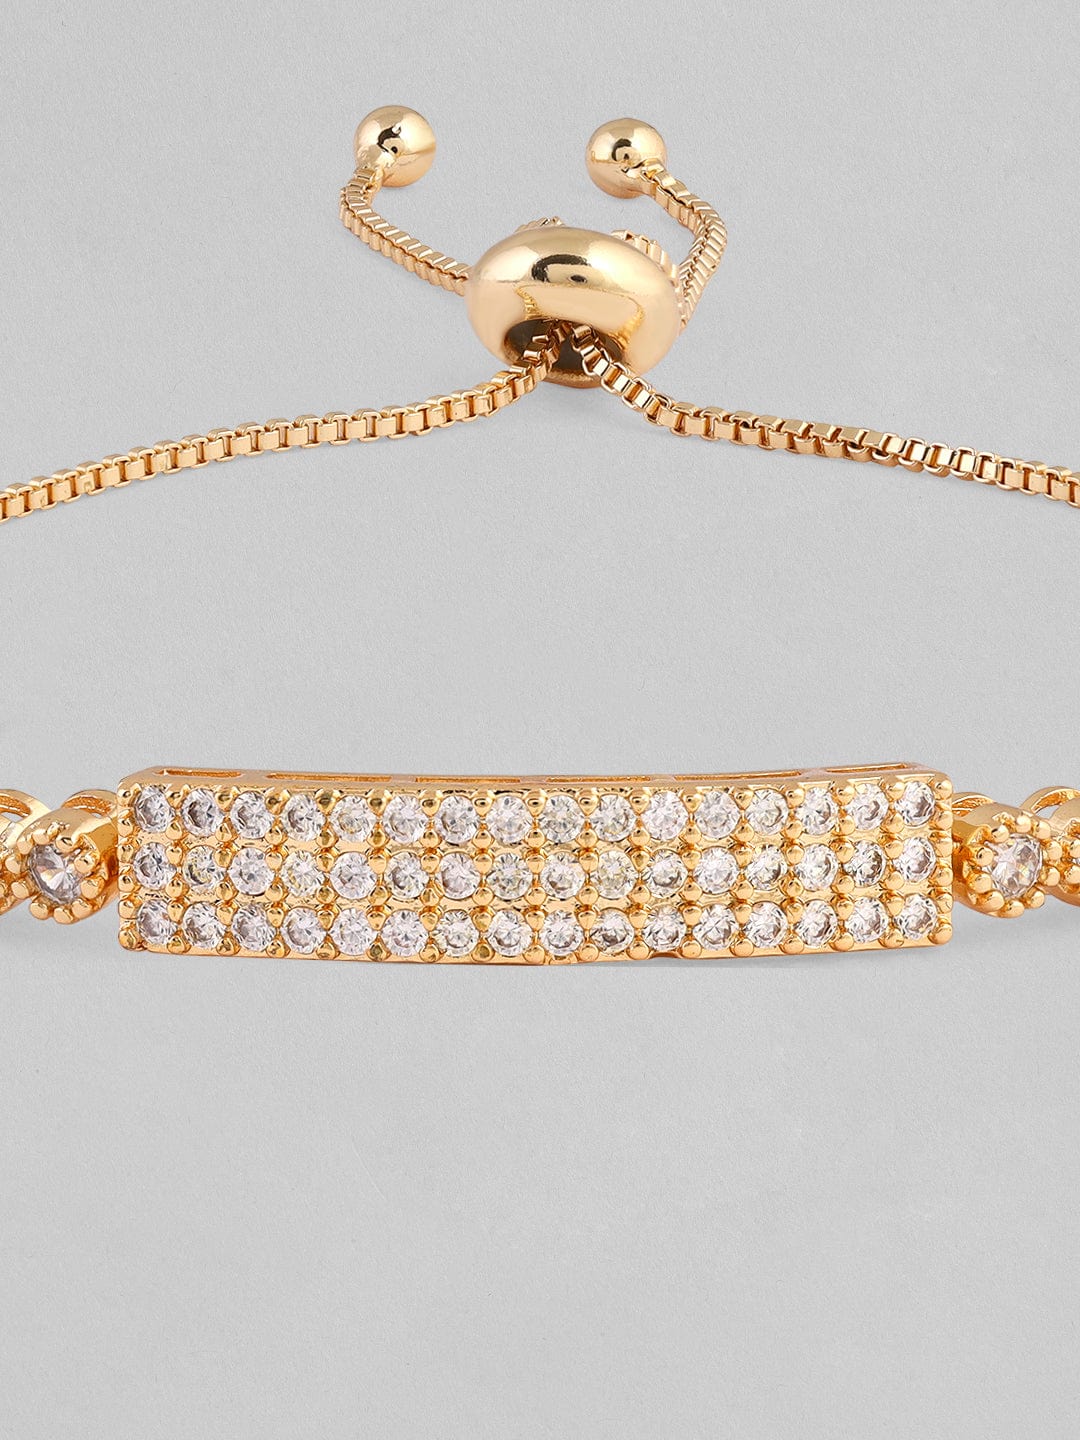 Rubans Gold Plated Western Bracelet Studded With American Diamonds. Bangles & Bracelets